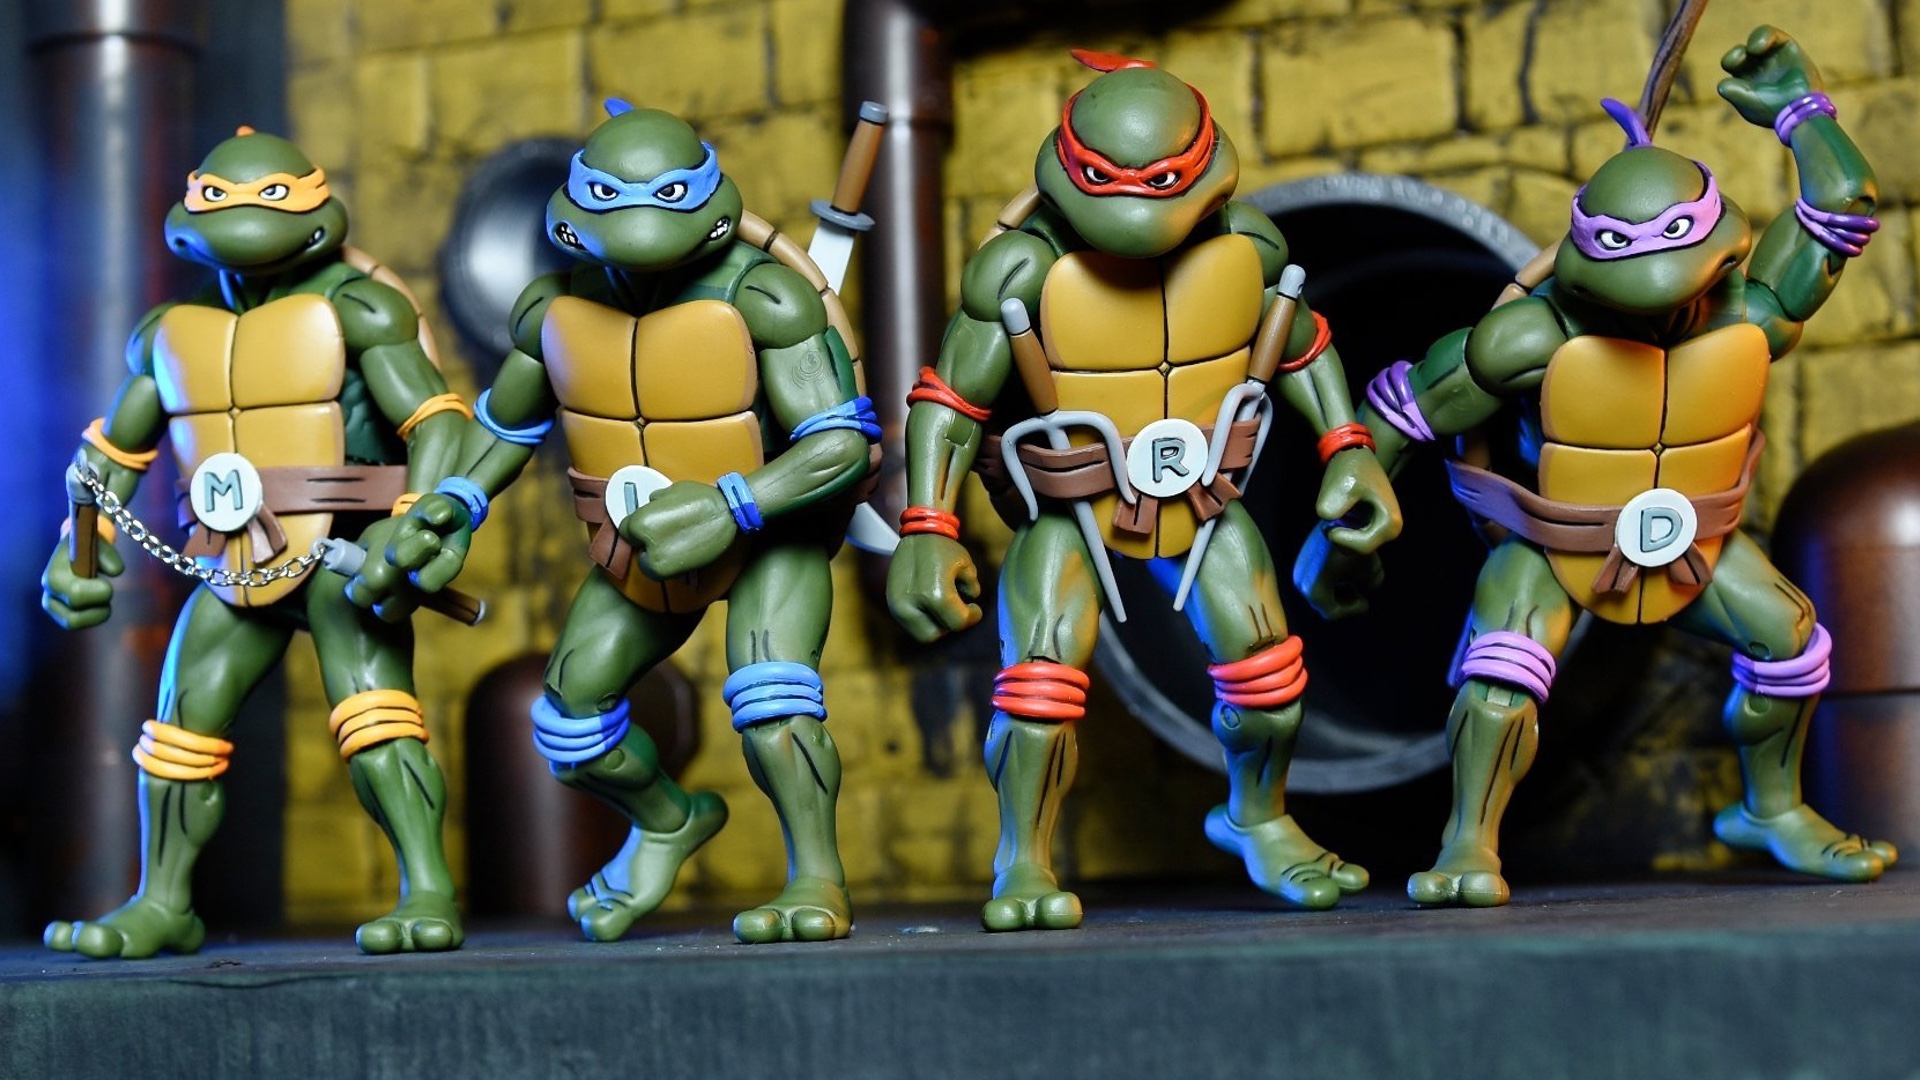 original teenage mutant ninja turtle toys